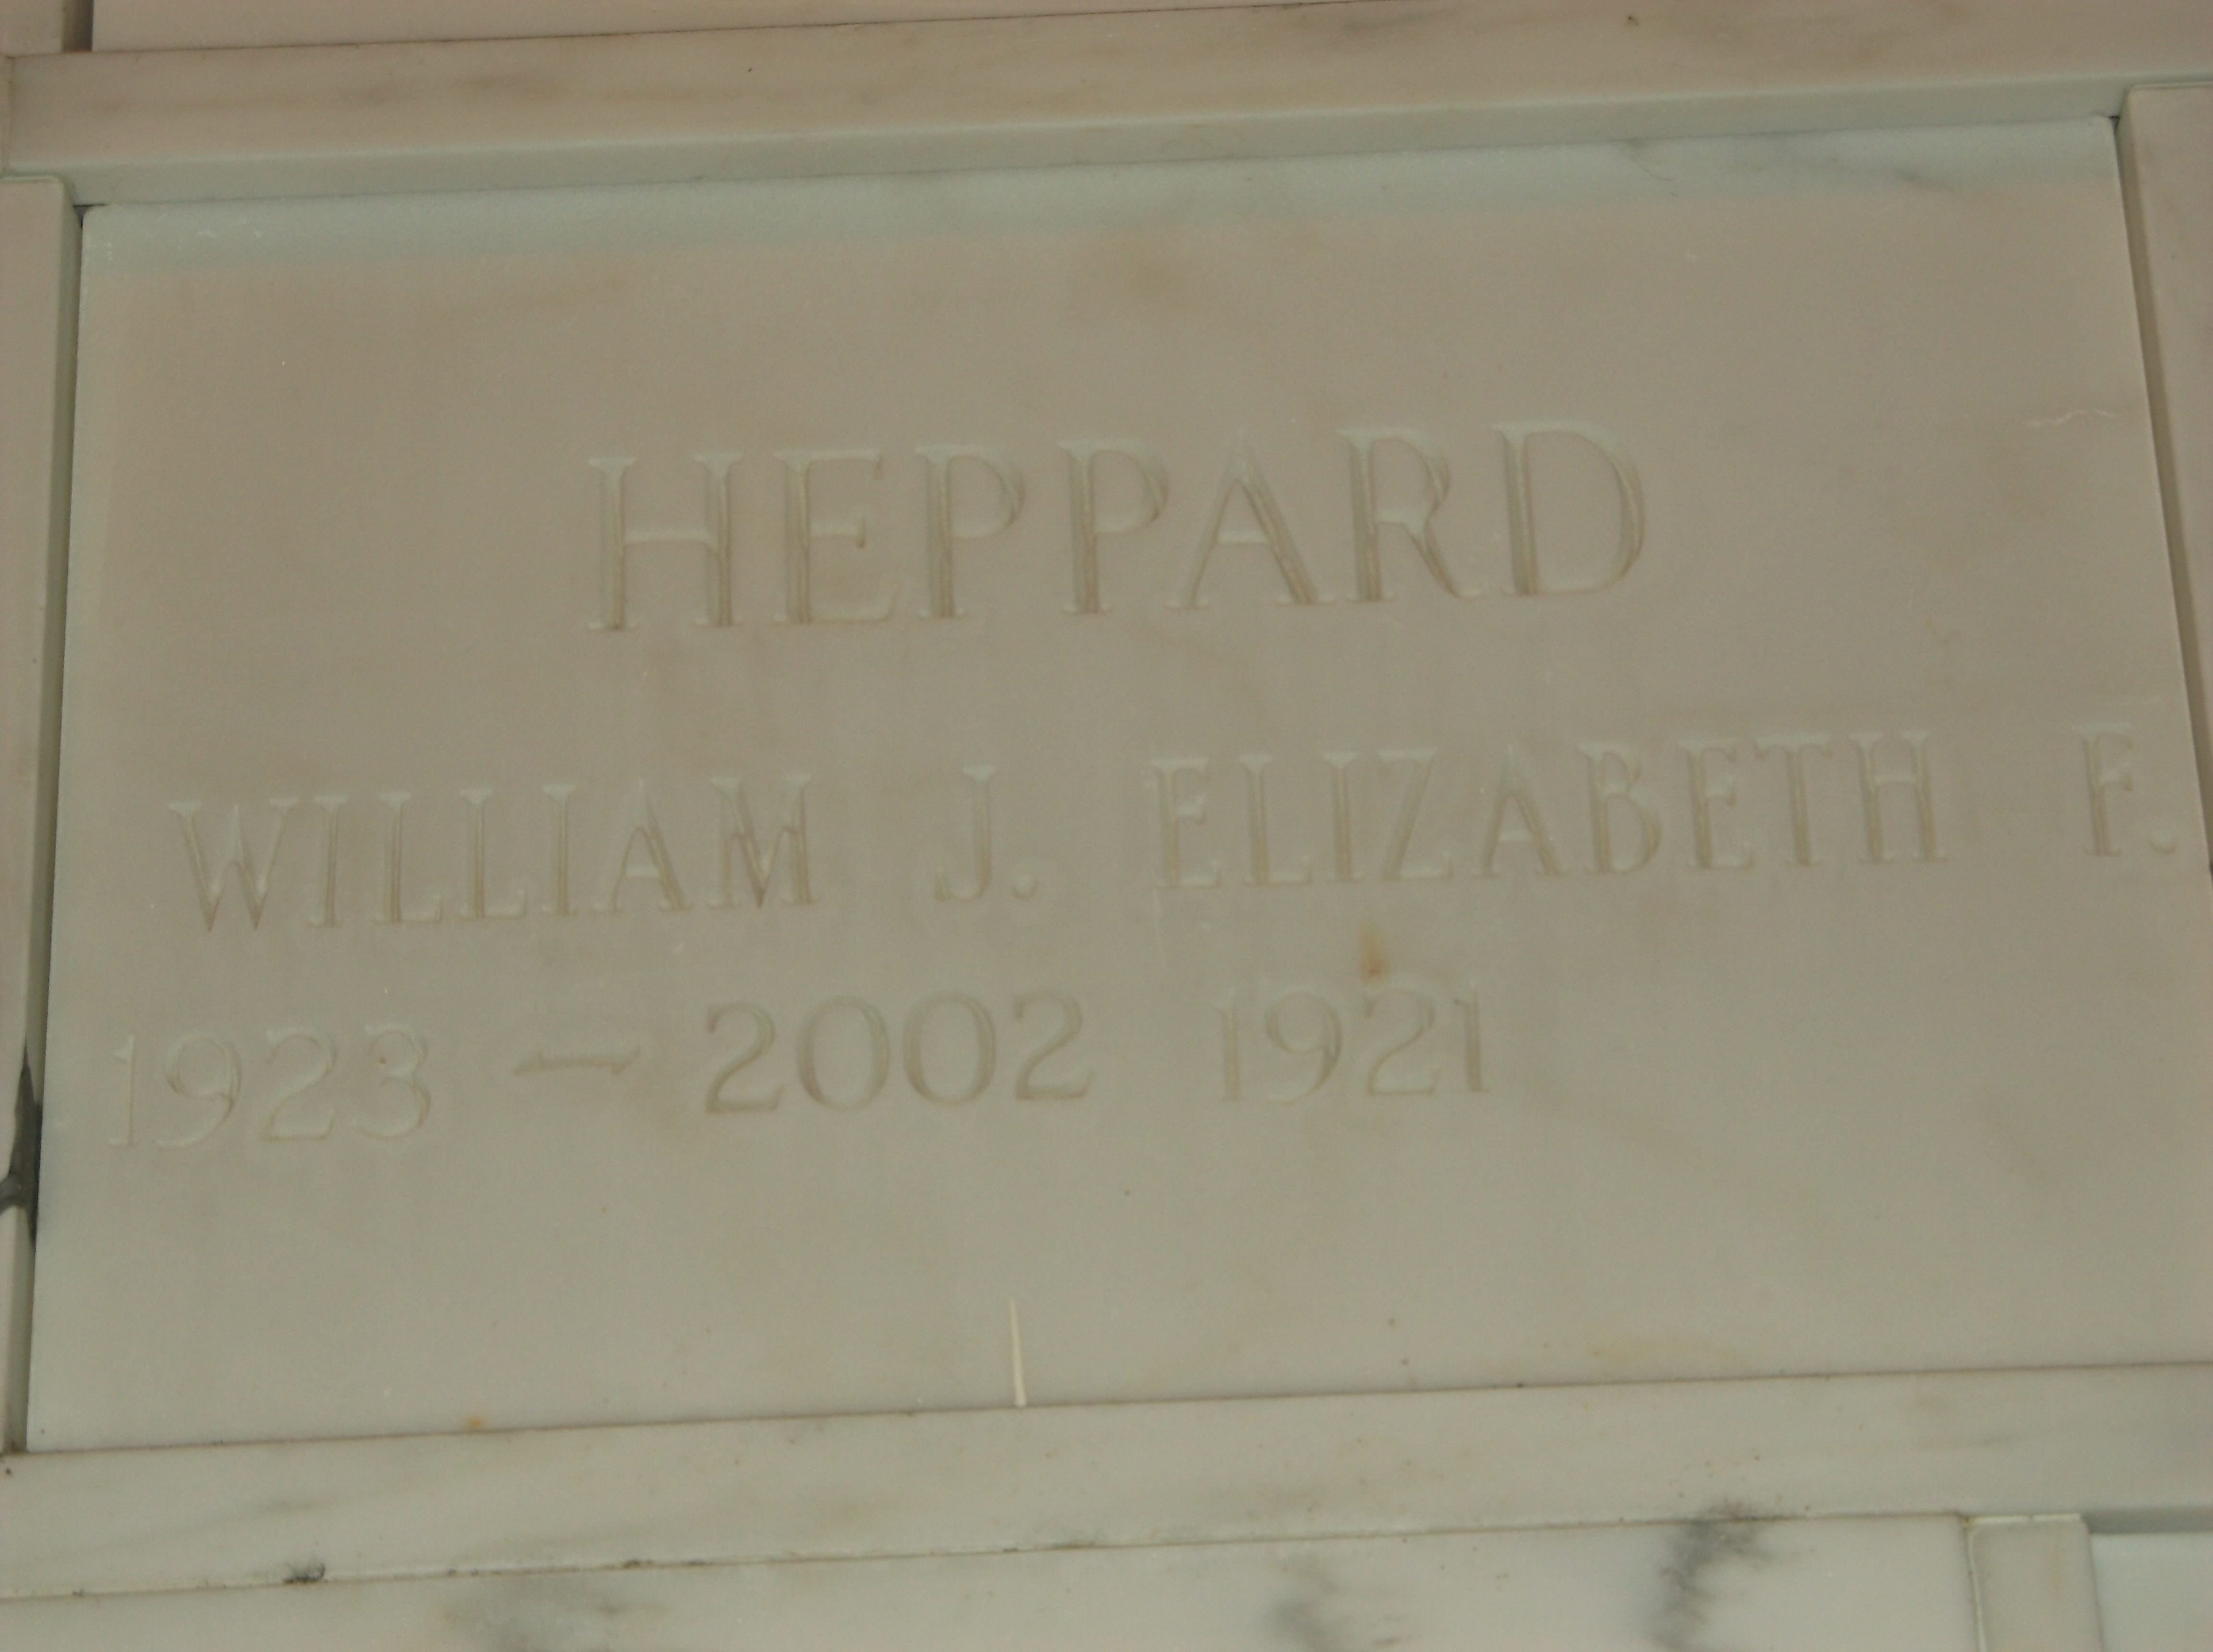 Elizabeth F Heppard